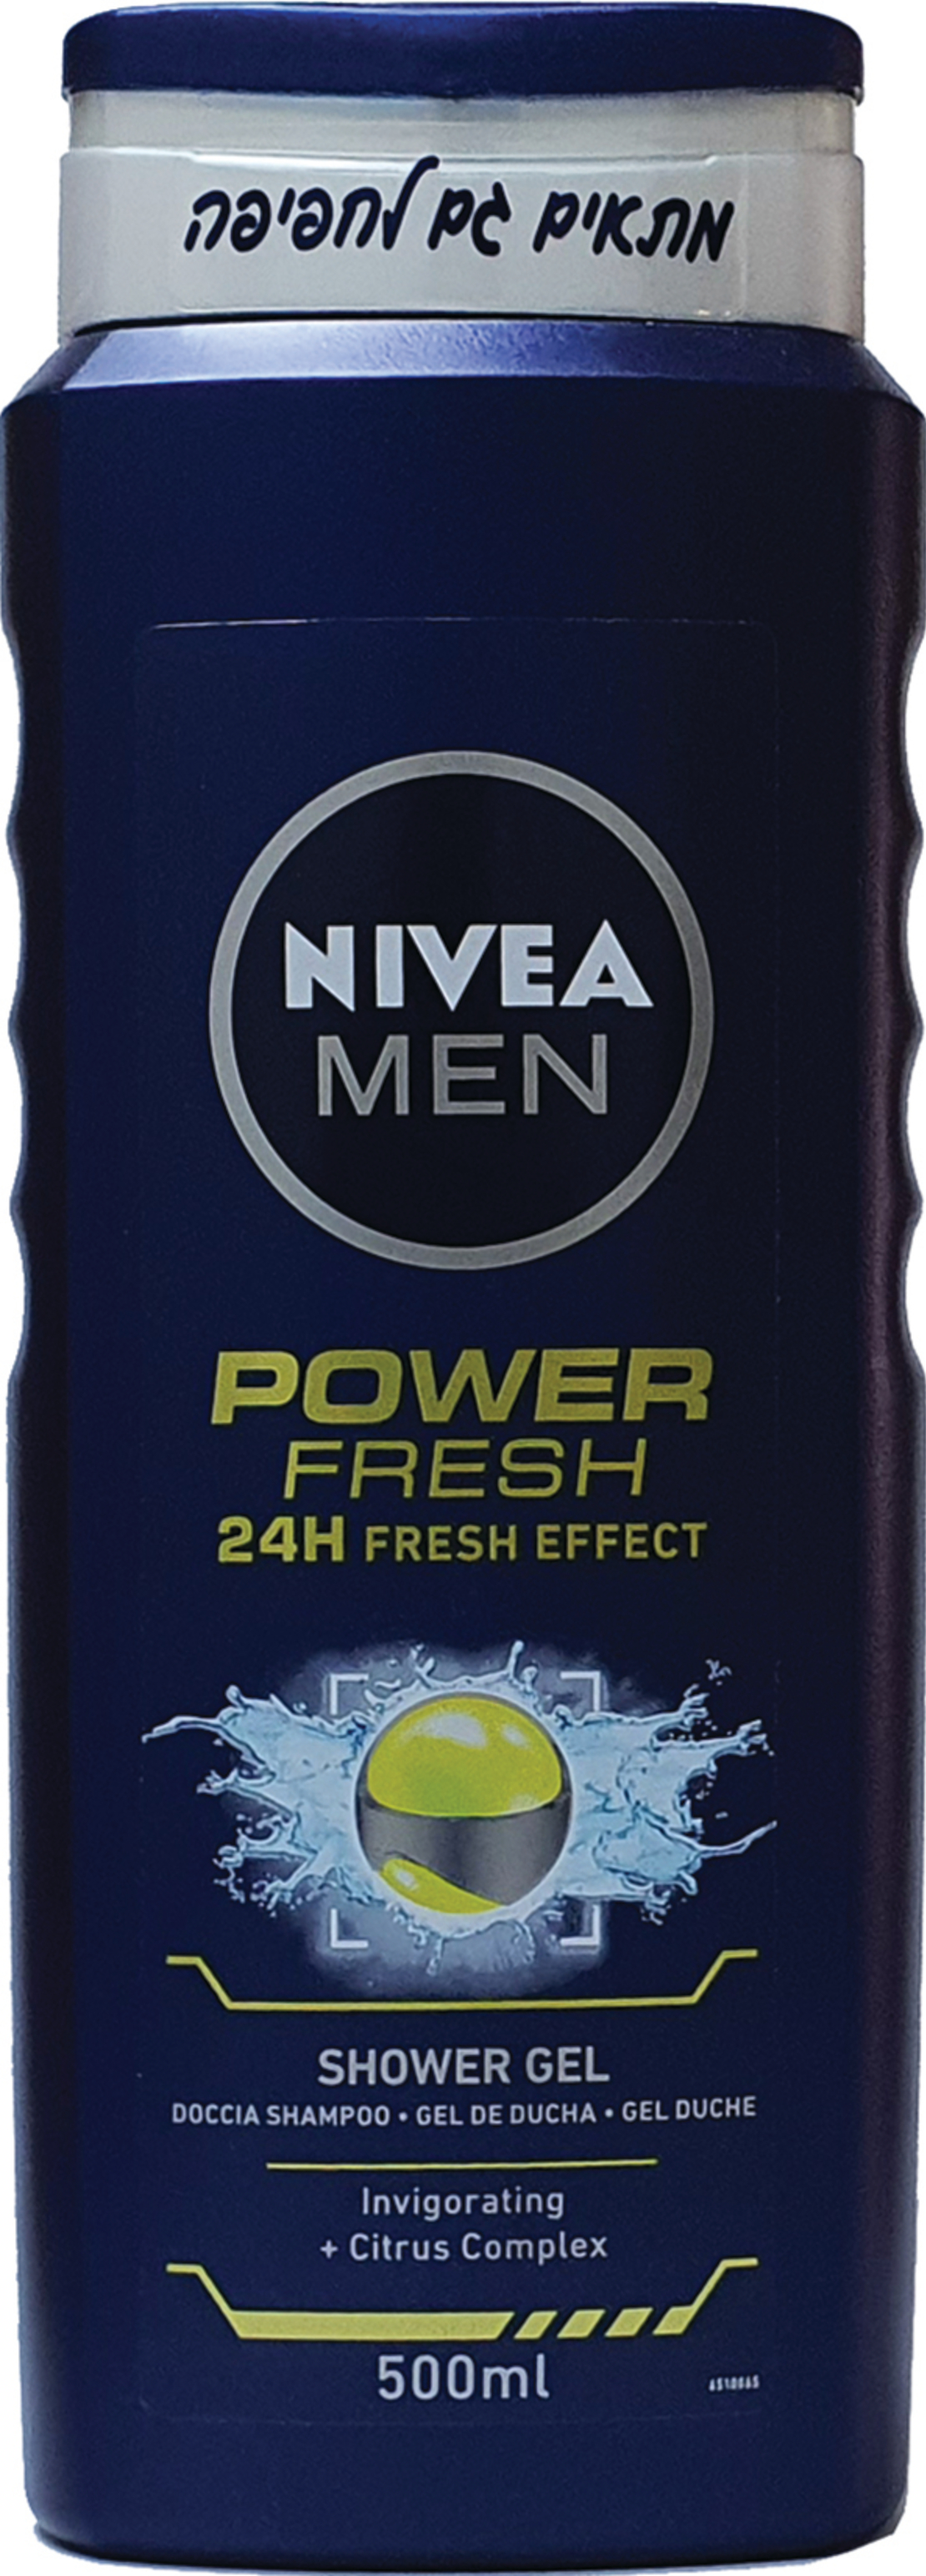 Nivea Men - Power Fresh Shower Gel 500ml